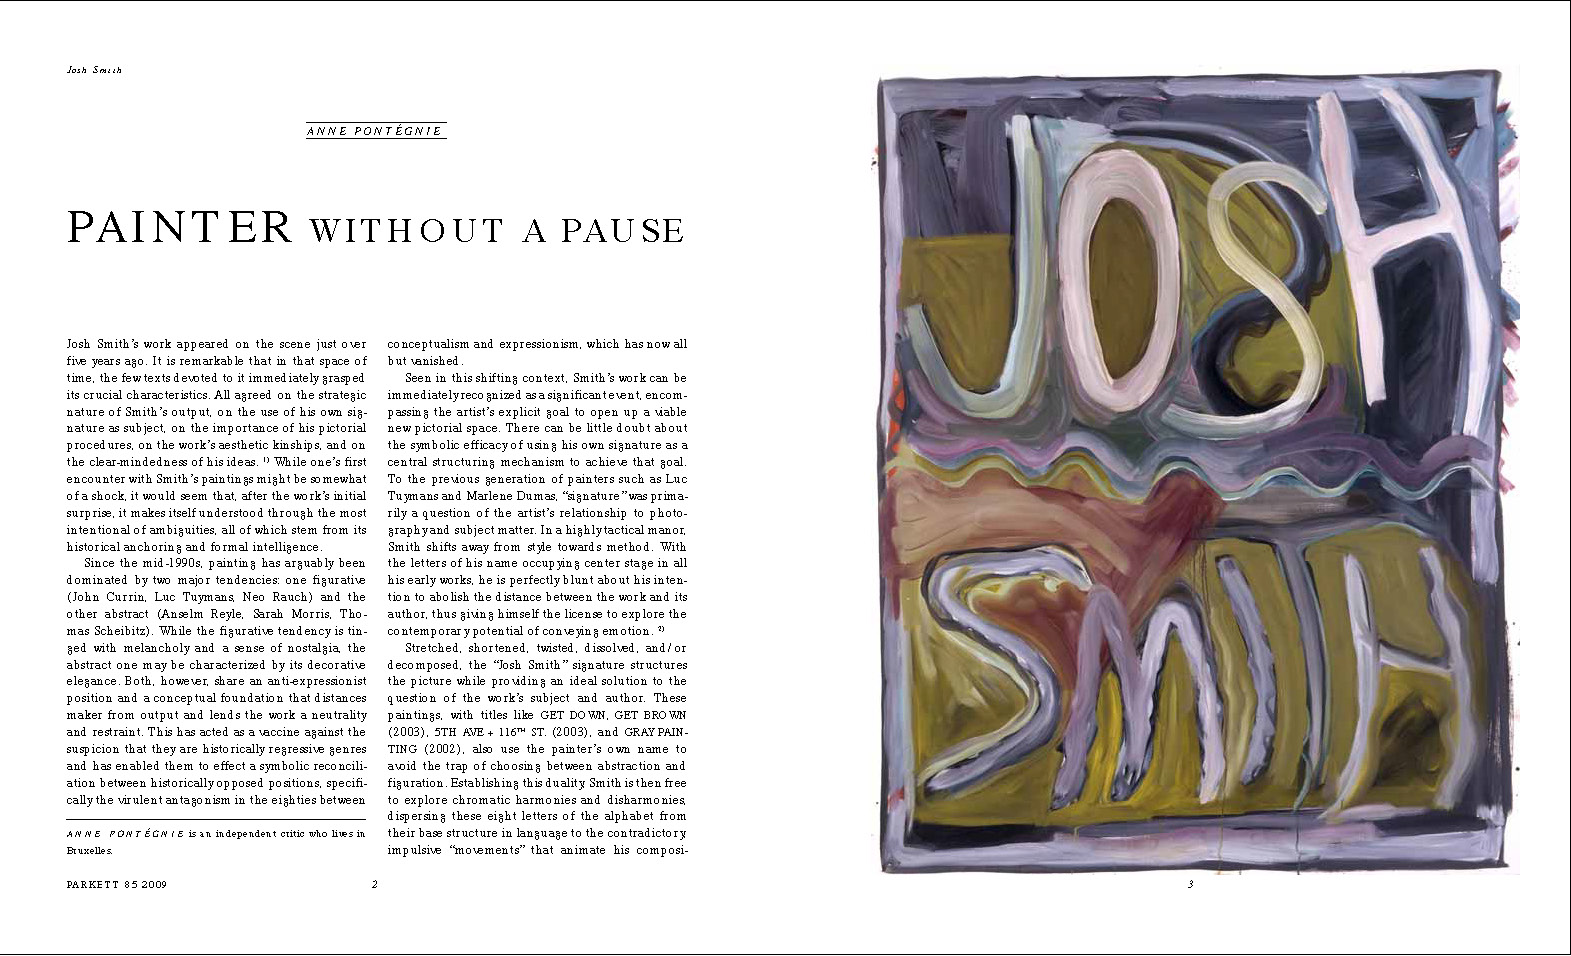 Anne Pontégnie, "Painter Without A Pause", Parkett 85 (2009), p.2-7.